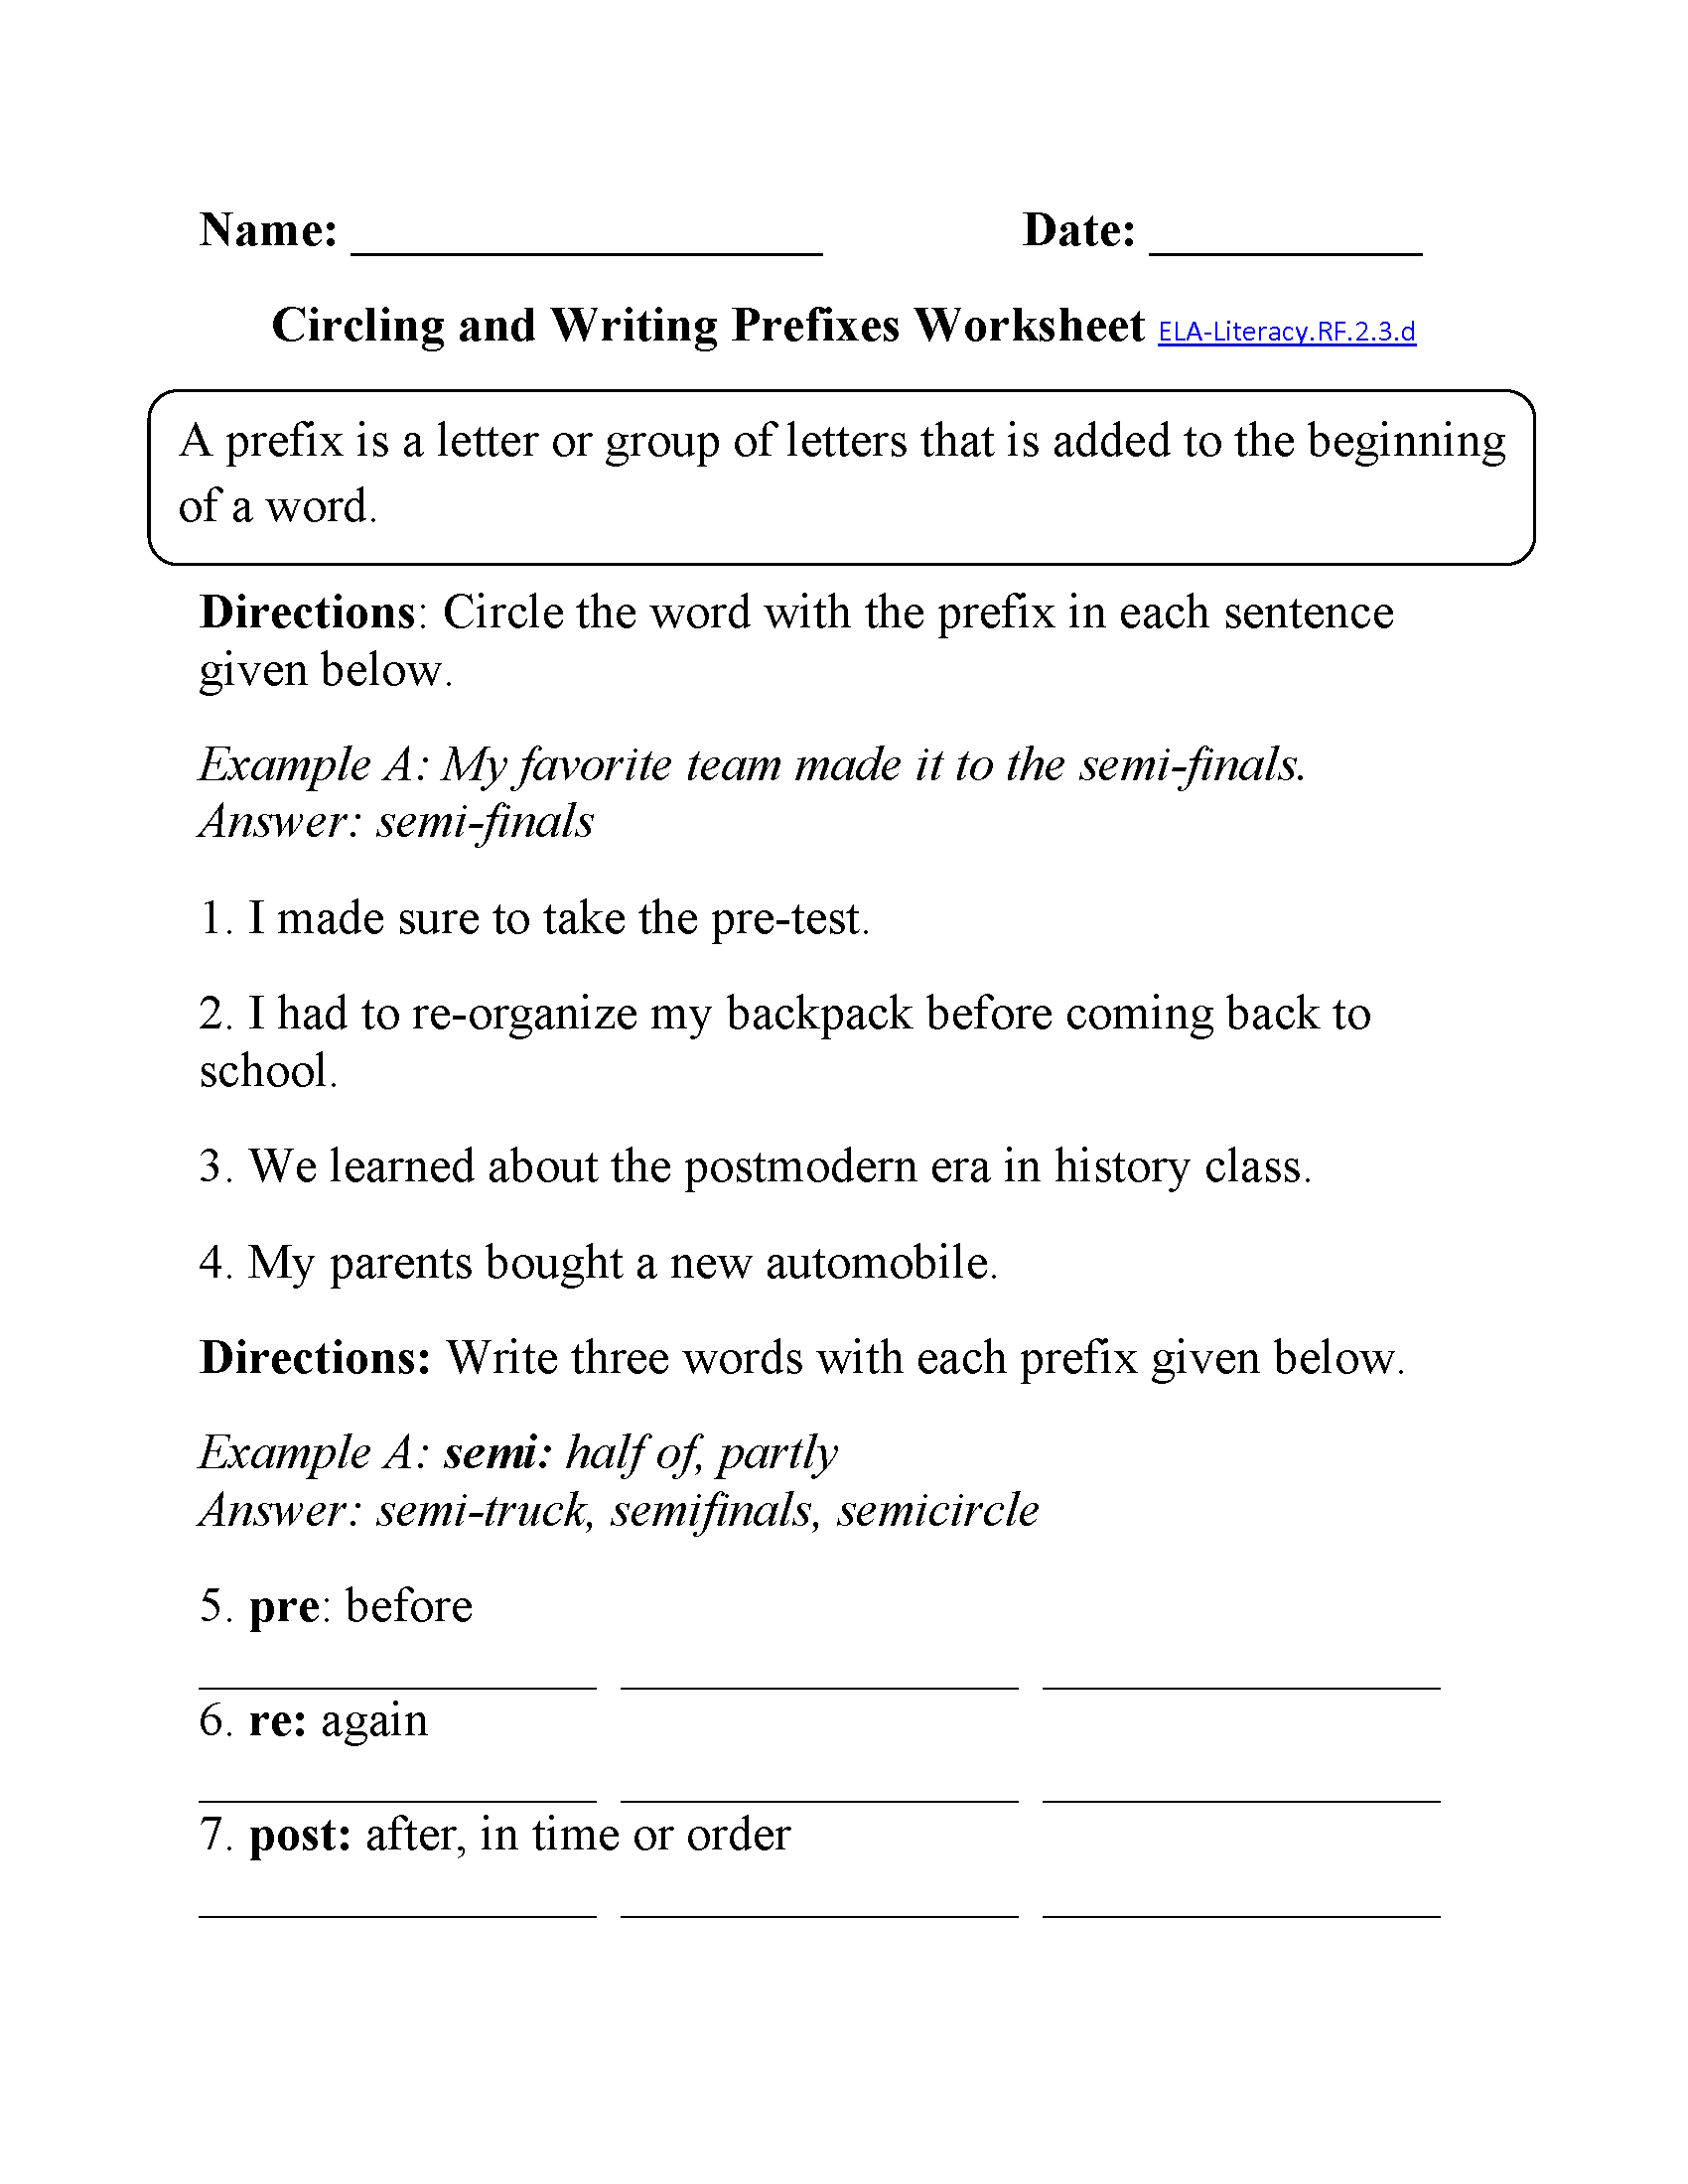 Prefixes Worksheet ELA-Literacy.RF.2.3.d Reading Foundational Skills